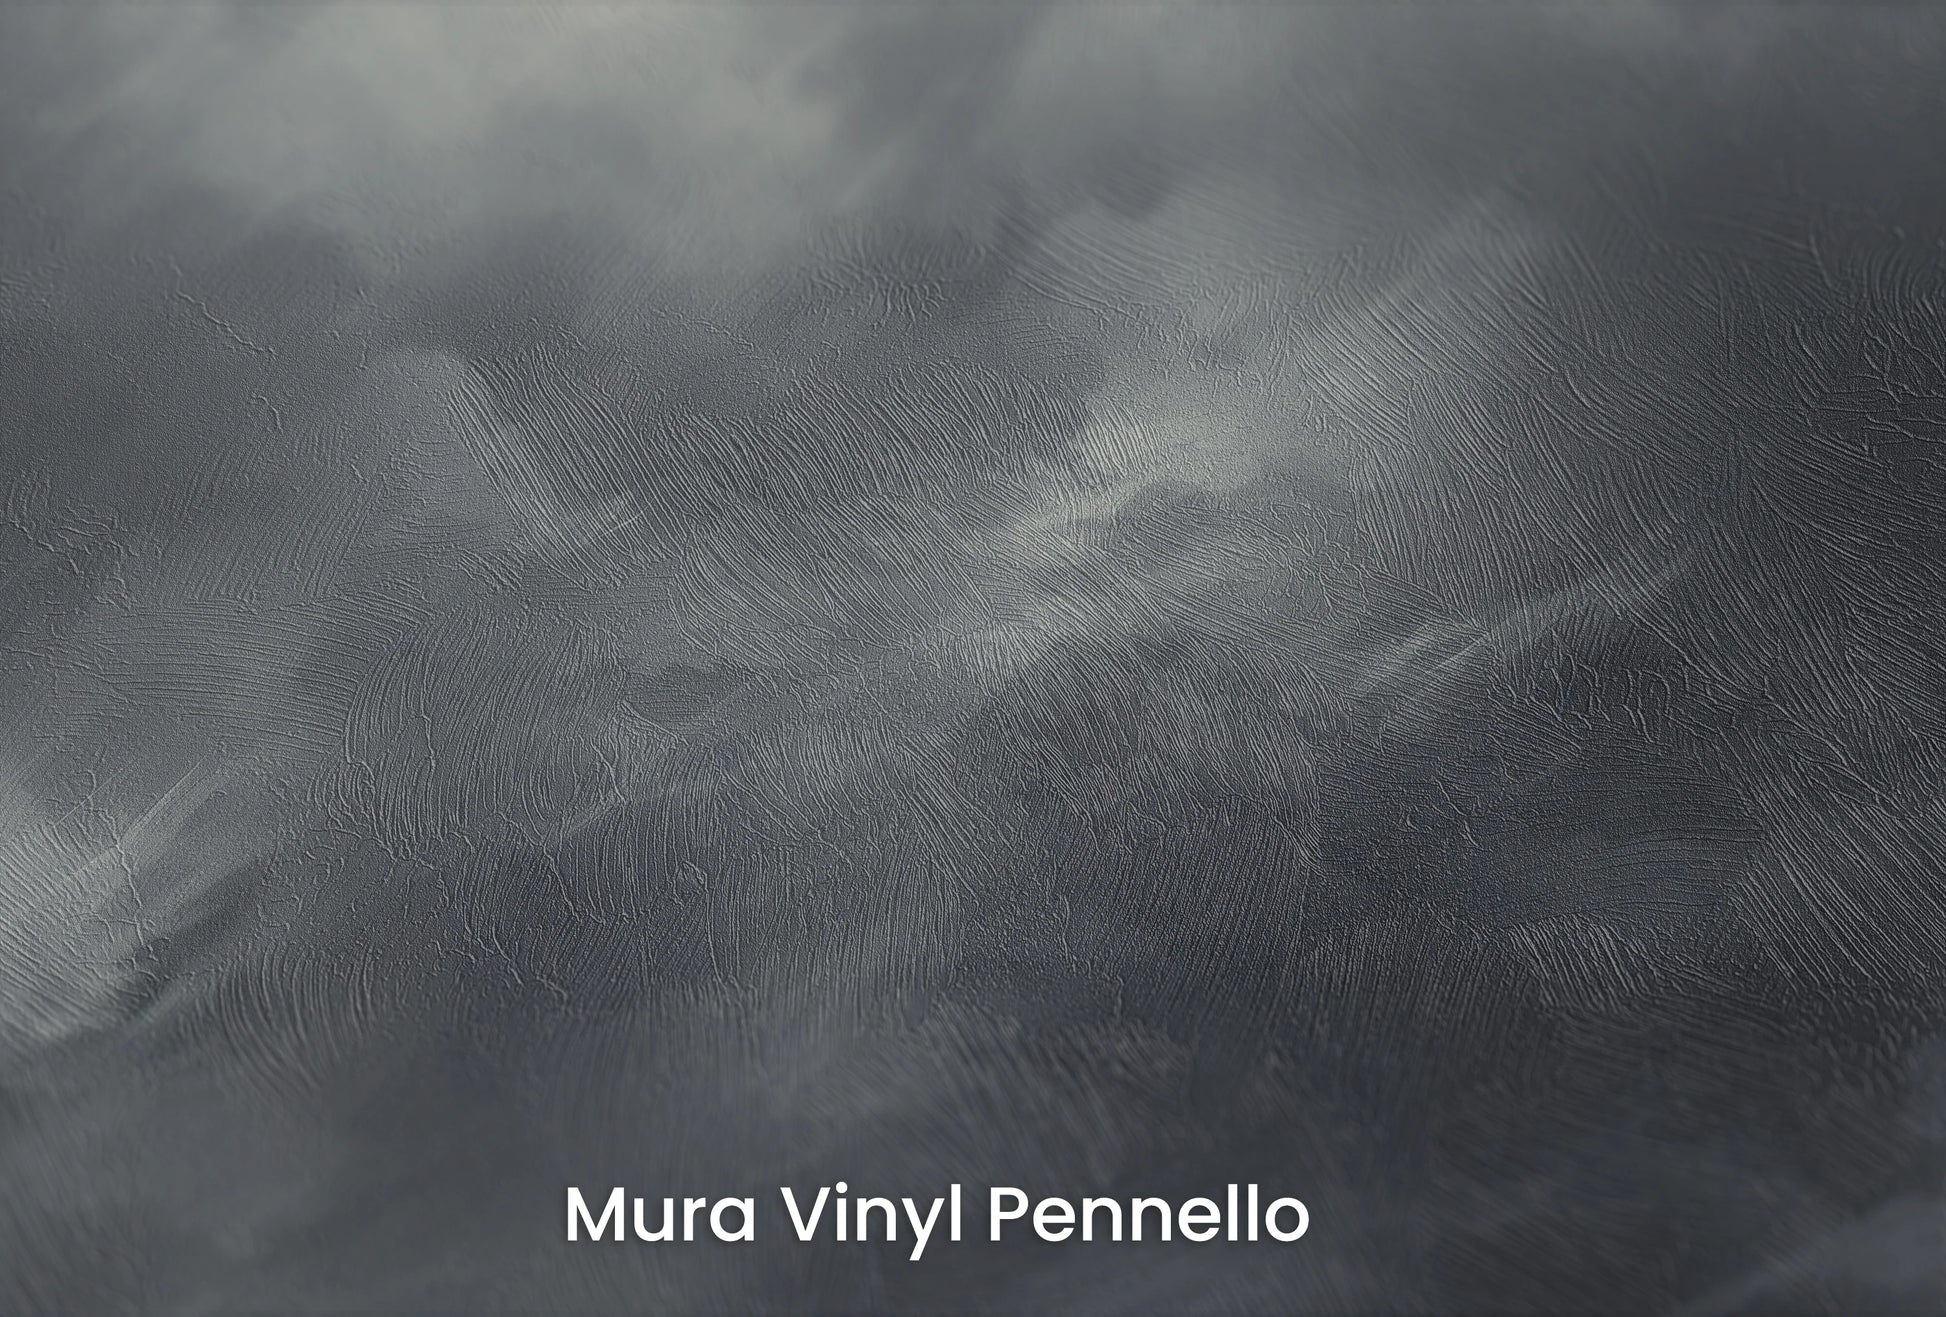 Zbliżenie na artystyczną fototapetę o nazwie Dynamic Swirls na podłożu Mura Vinyl Pennello - faktura pociągnięć pędzla malarskiego.